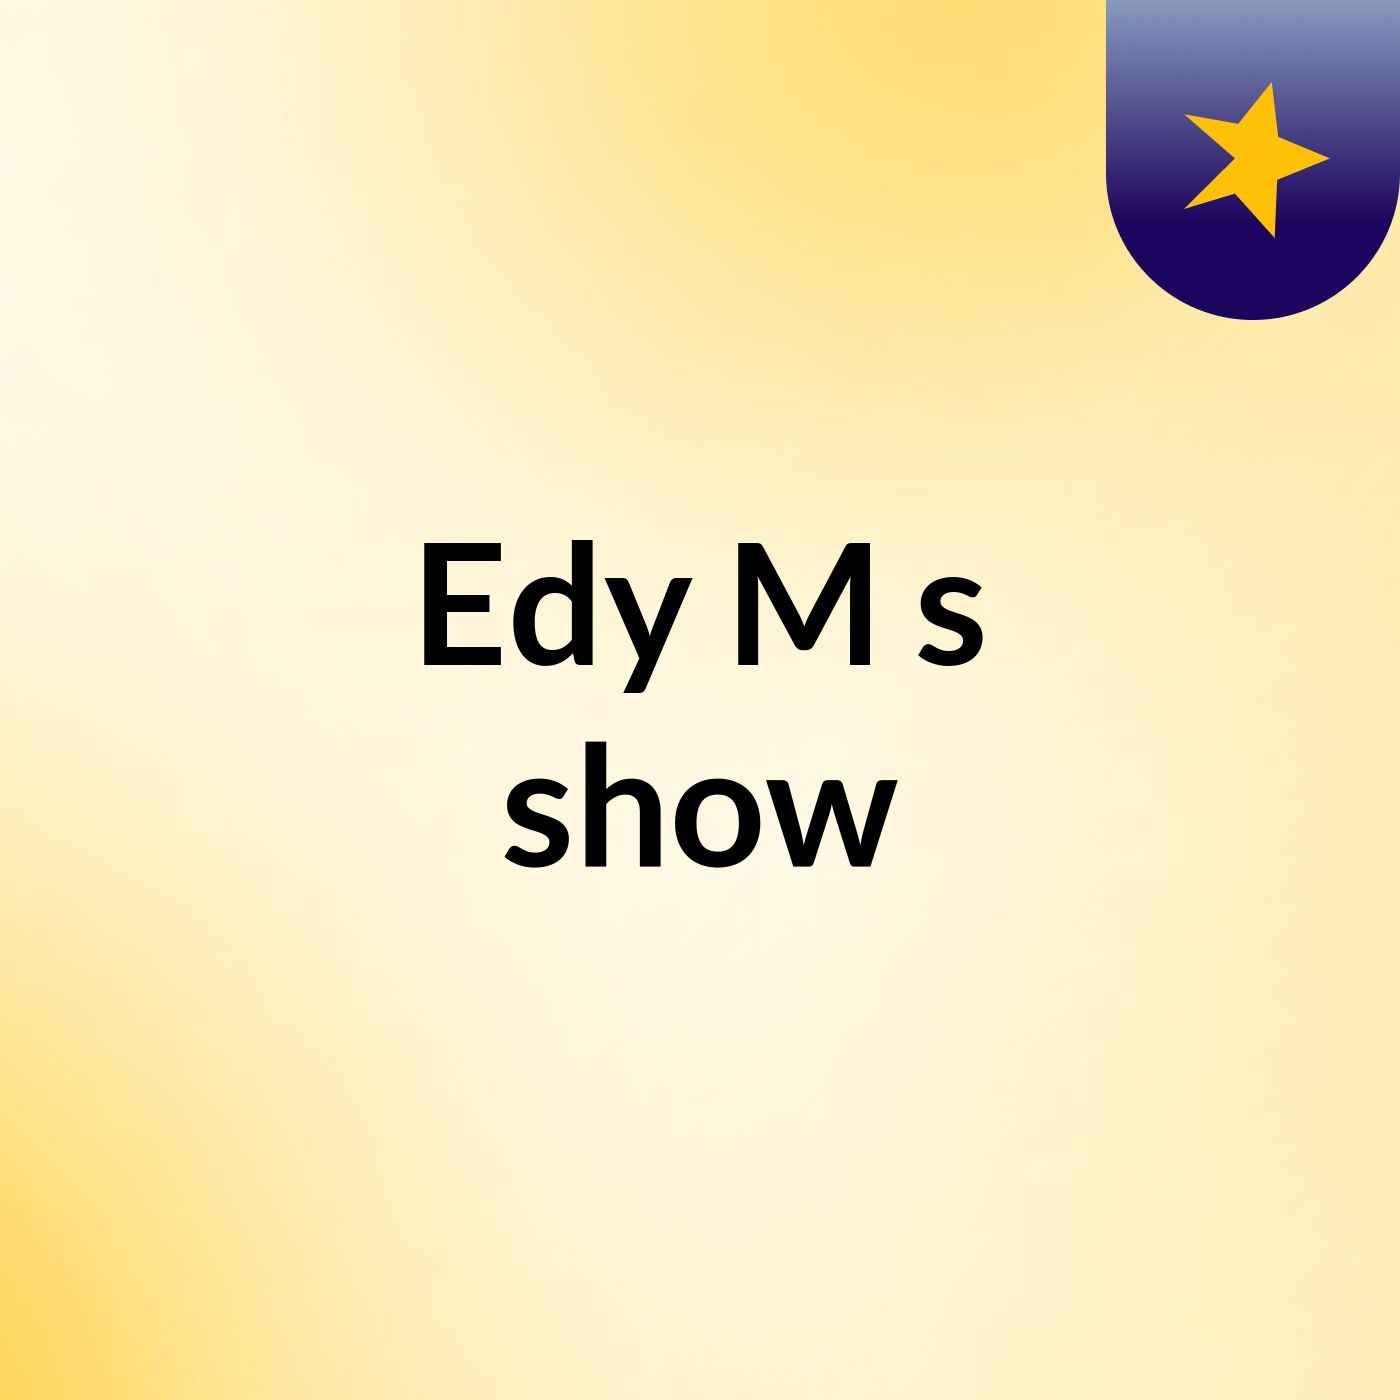 Edy M's show